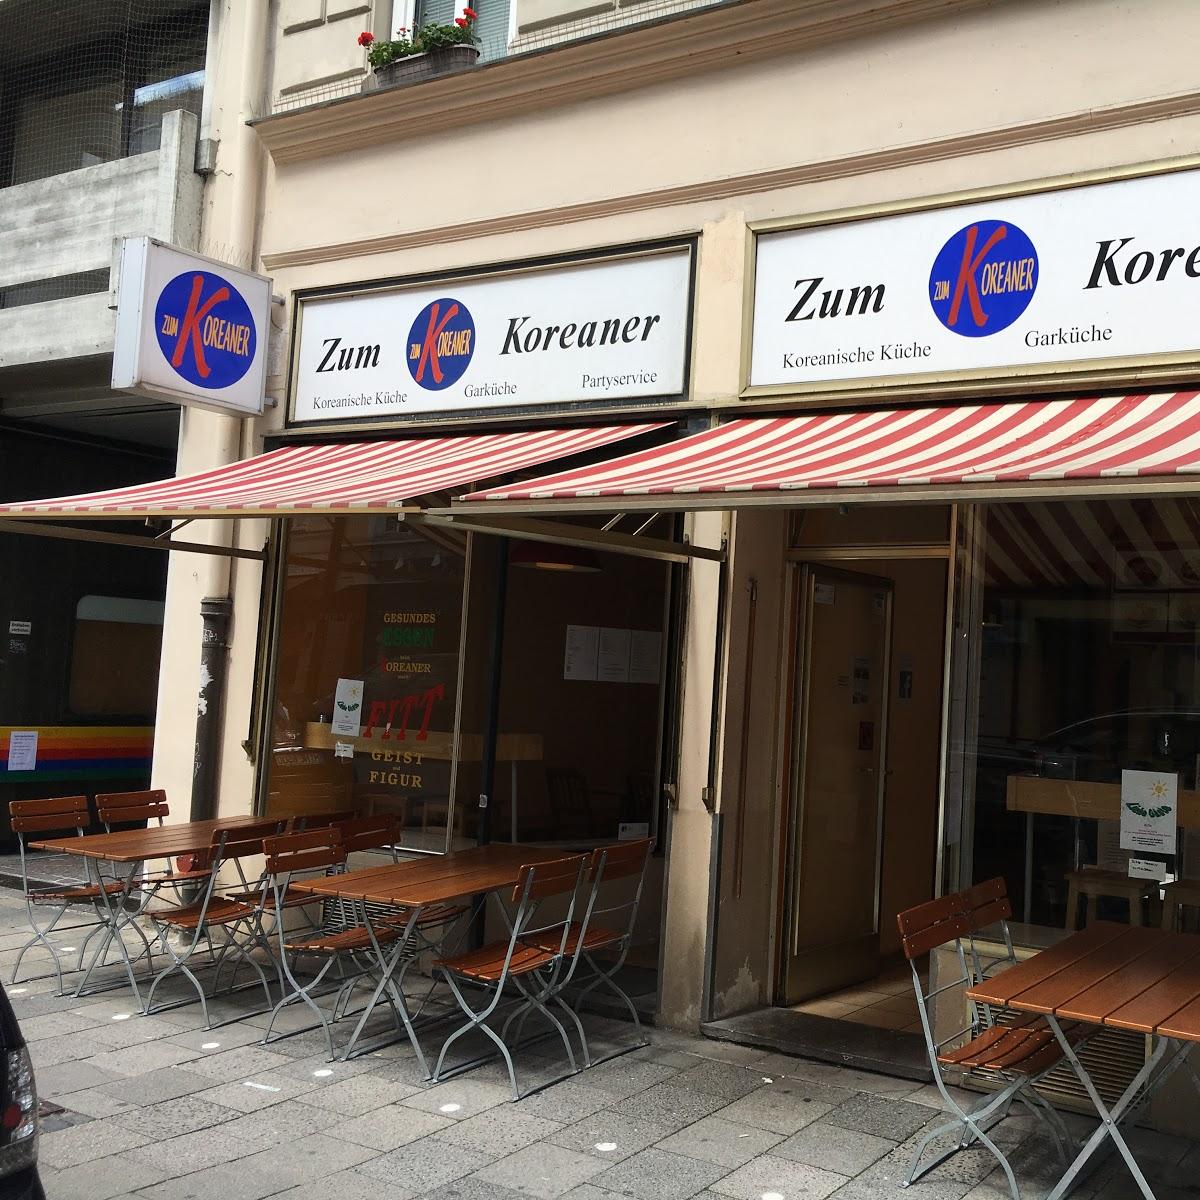 Restaurant "Zum Koreaner" in München